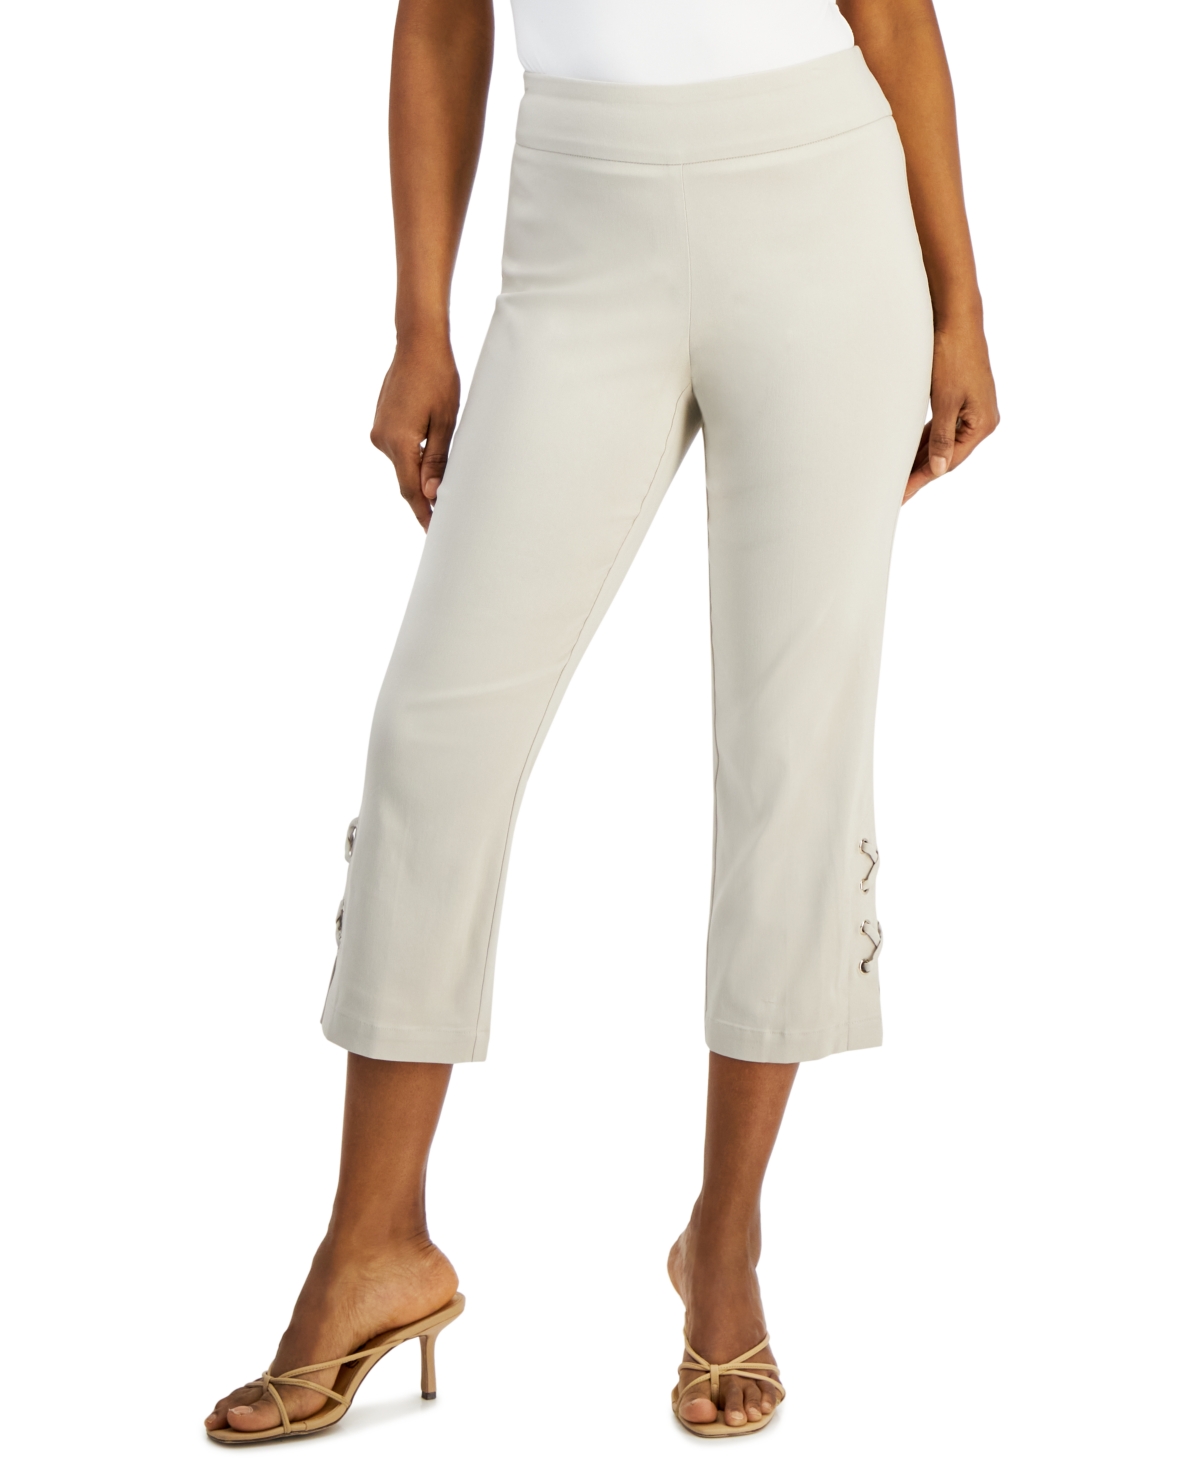 Women's Side Lace-Up Capri Pants, Created for Macy's - Citrus Sachet